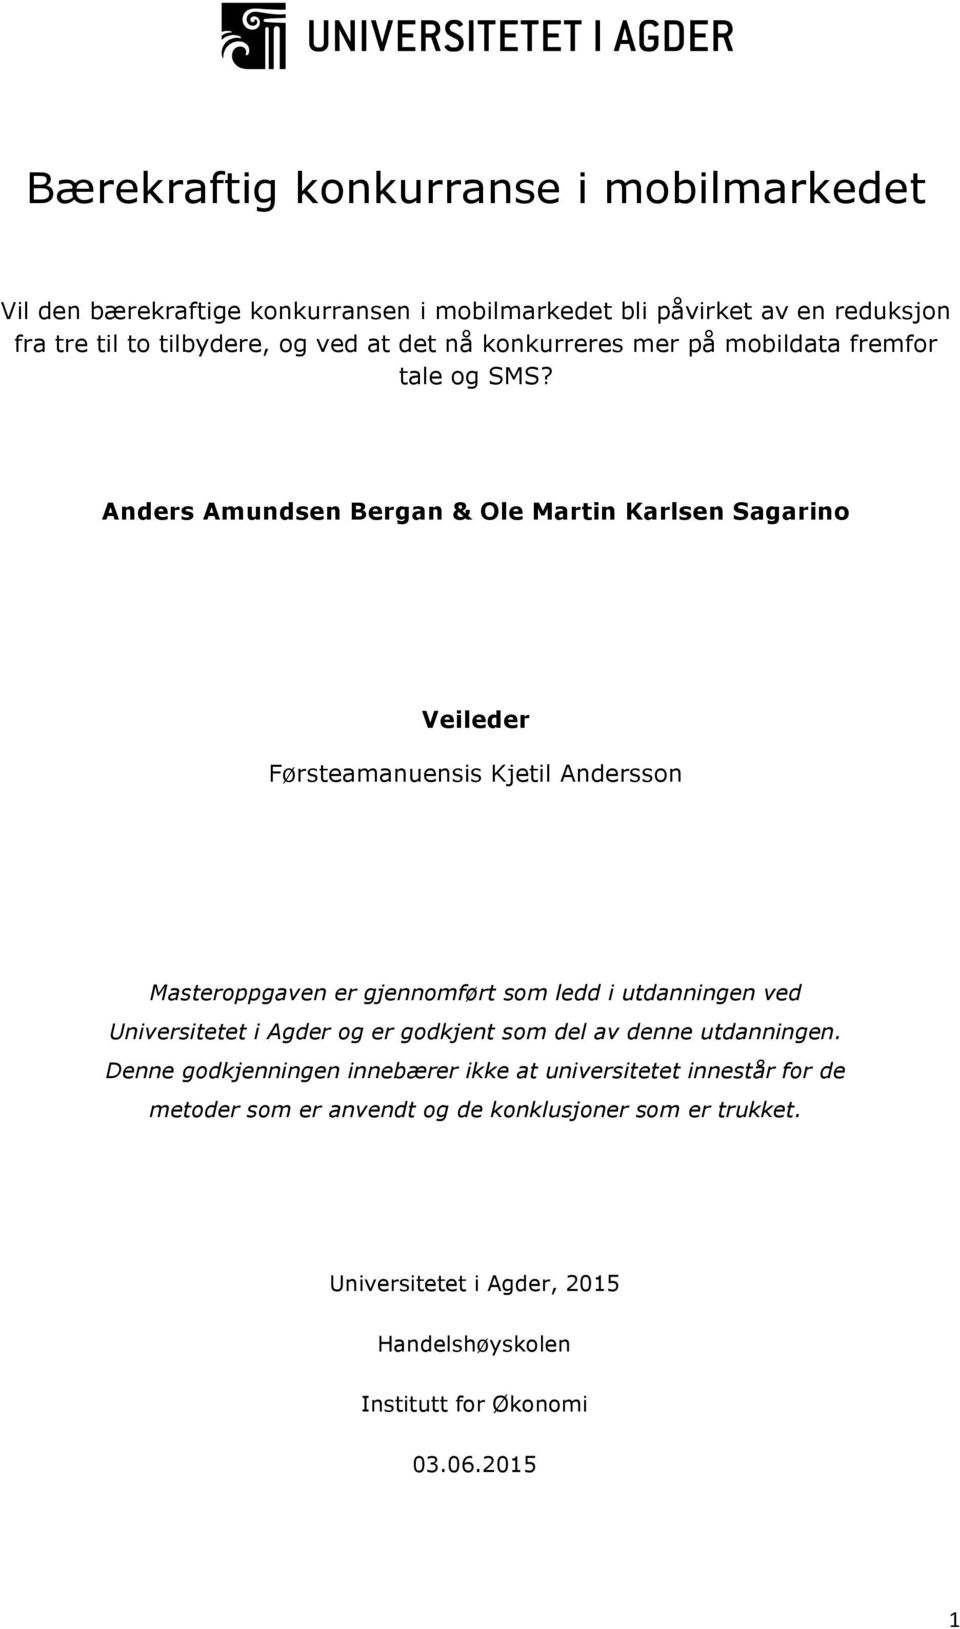 Anders Amundsen Bergan & Ole Martin Karlsen Sagarino Veileder Førsteamanuensis Kjetil Andersson Masteroppgaven er gjennomført som ledd i utdanningen ved